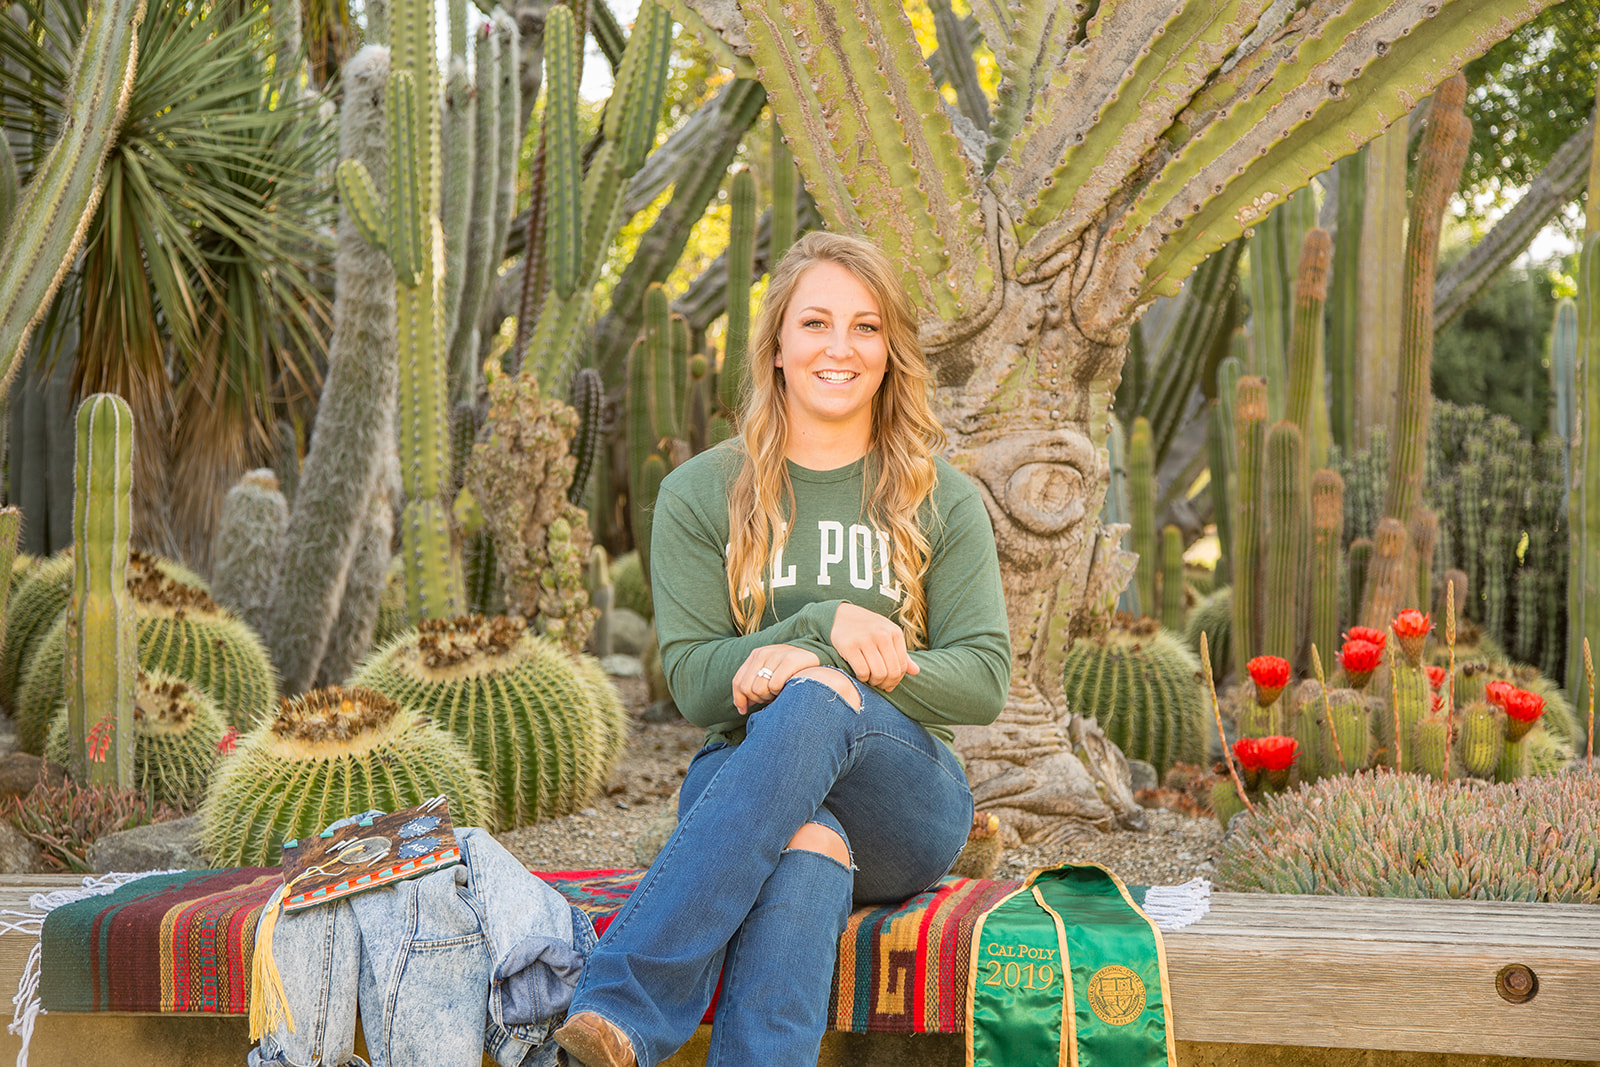 Senior photos at cal poly cactus garden with props